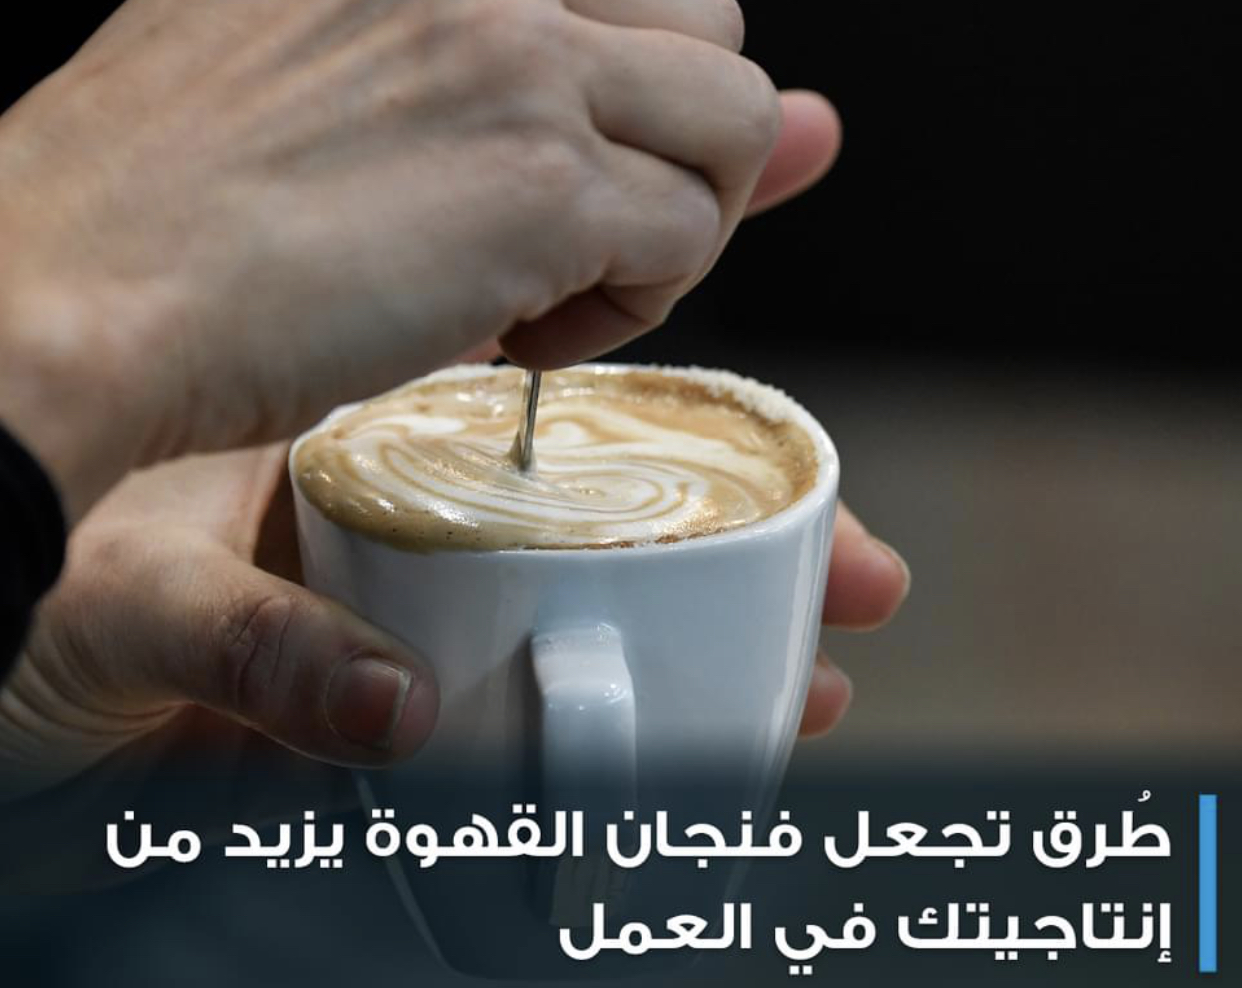 طُرق تجعل فنجان القهوة يزيد من إنتاجيتك في العمل